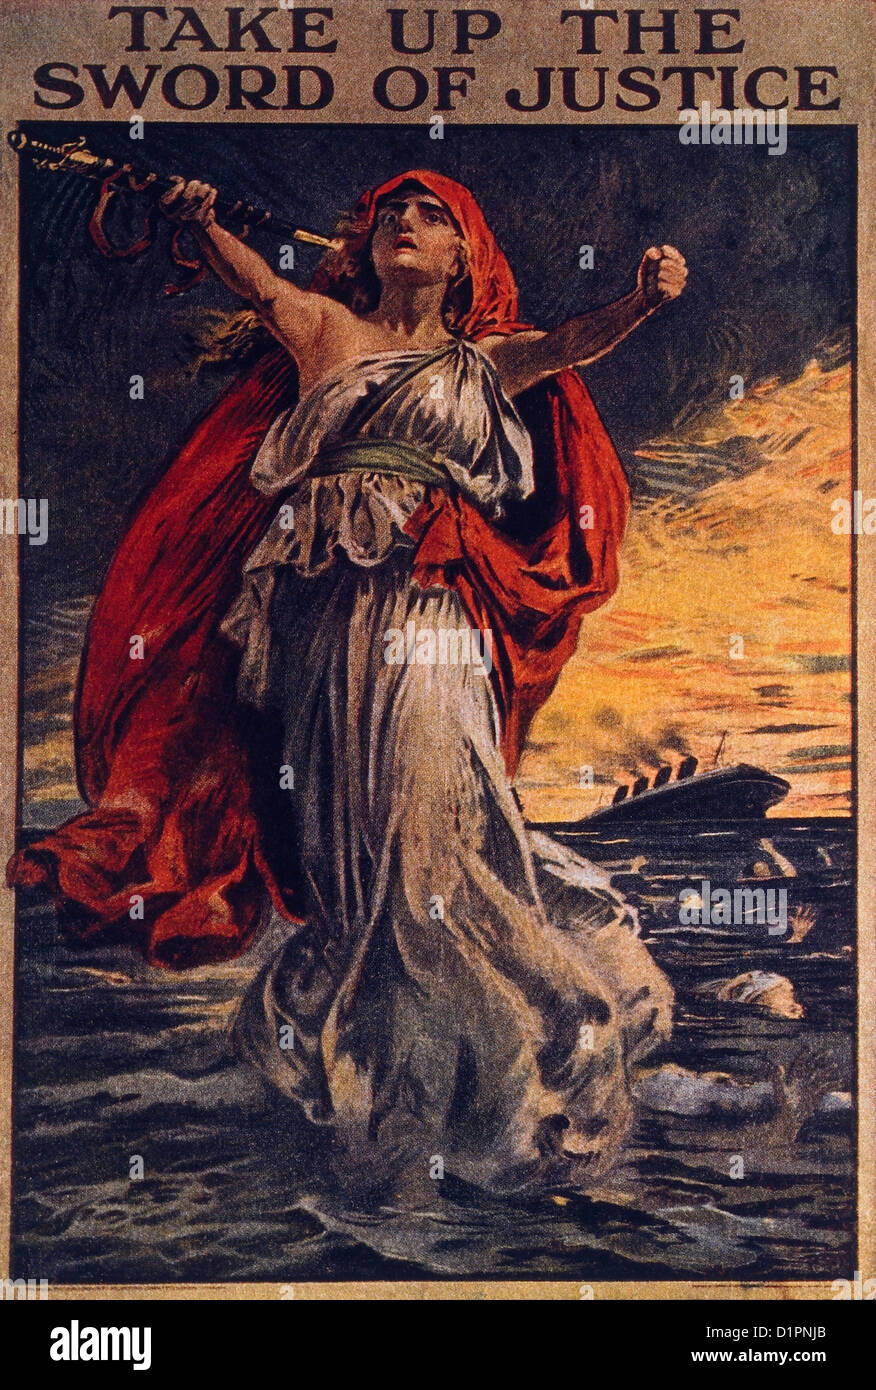 Prendre l'épée de la Justice, d'affiches de guerre britanniques relatives à la Naufrage du RMS Lusitania par un sous-marin allemand, 1915 Banque D'Images